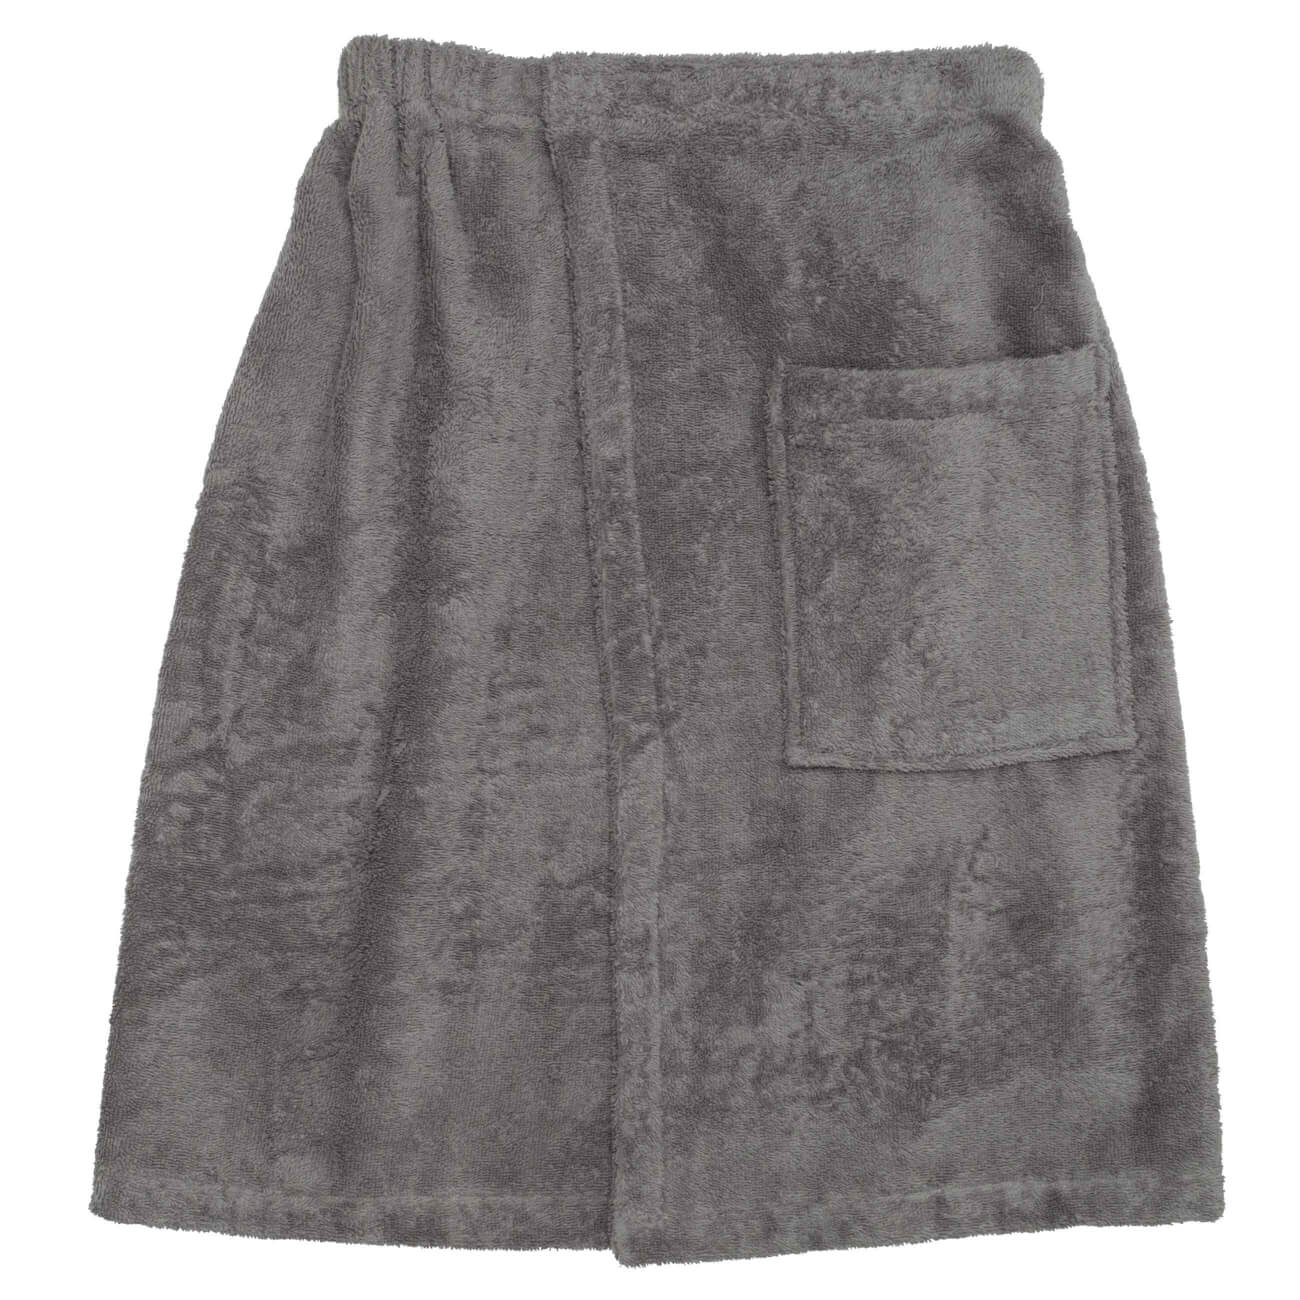 Полотенце-килт мужское, 70х160 см, на липучке, хлопок, темно-серое, Spa towel бумажное полотенце tork